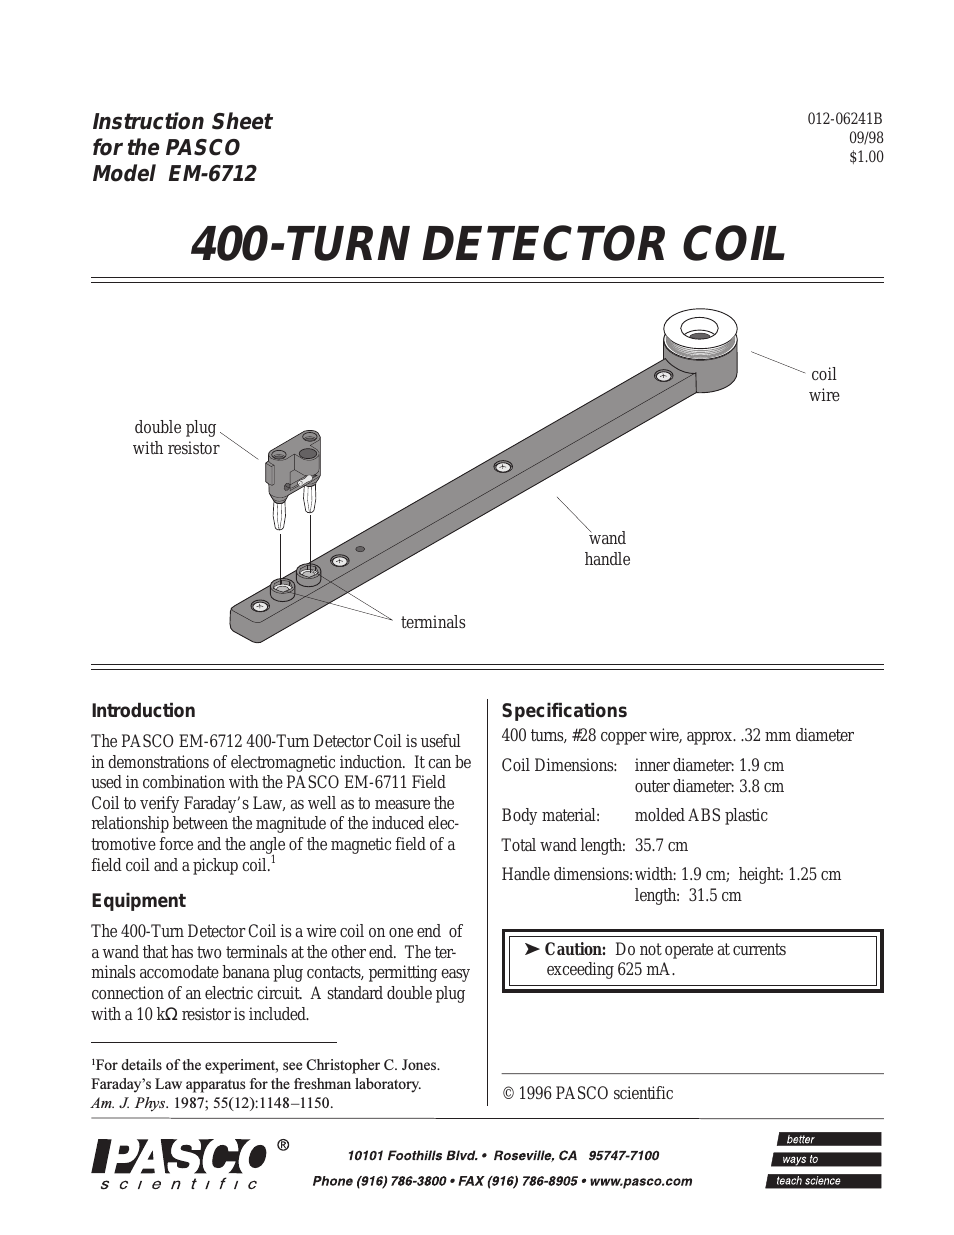 EM-6712 400-TURN DETECTOR COIL